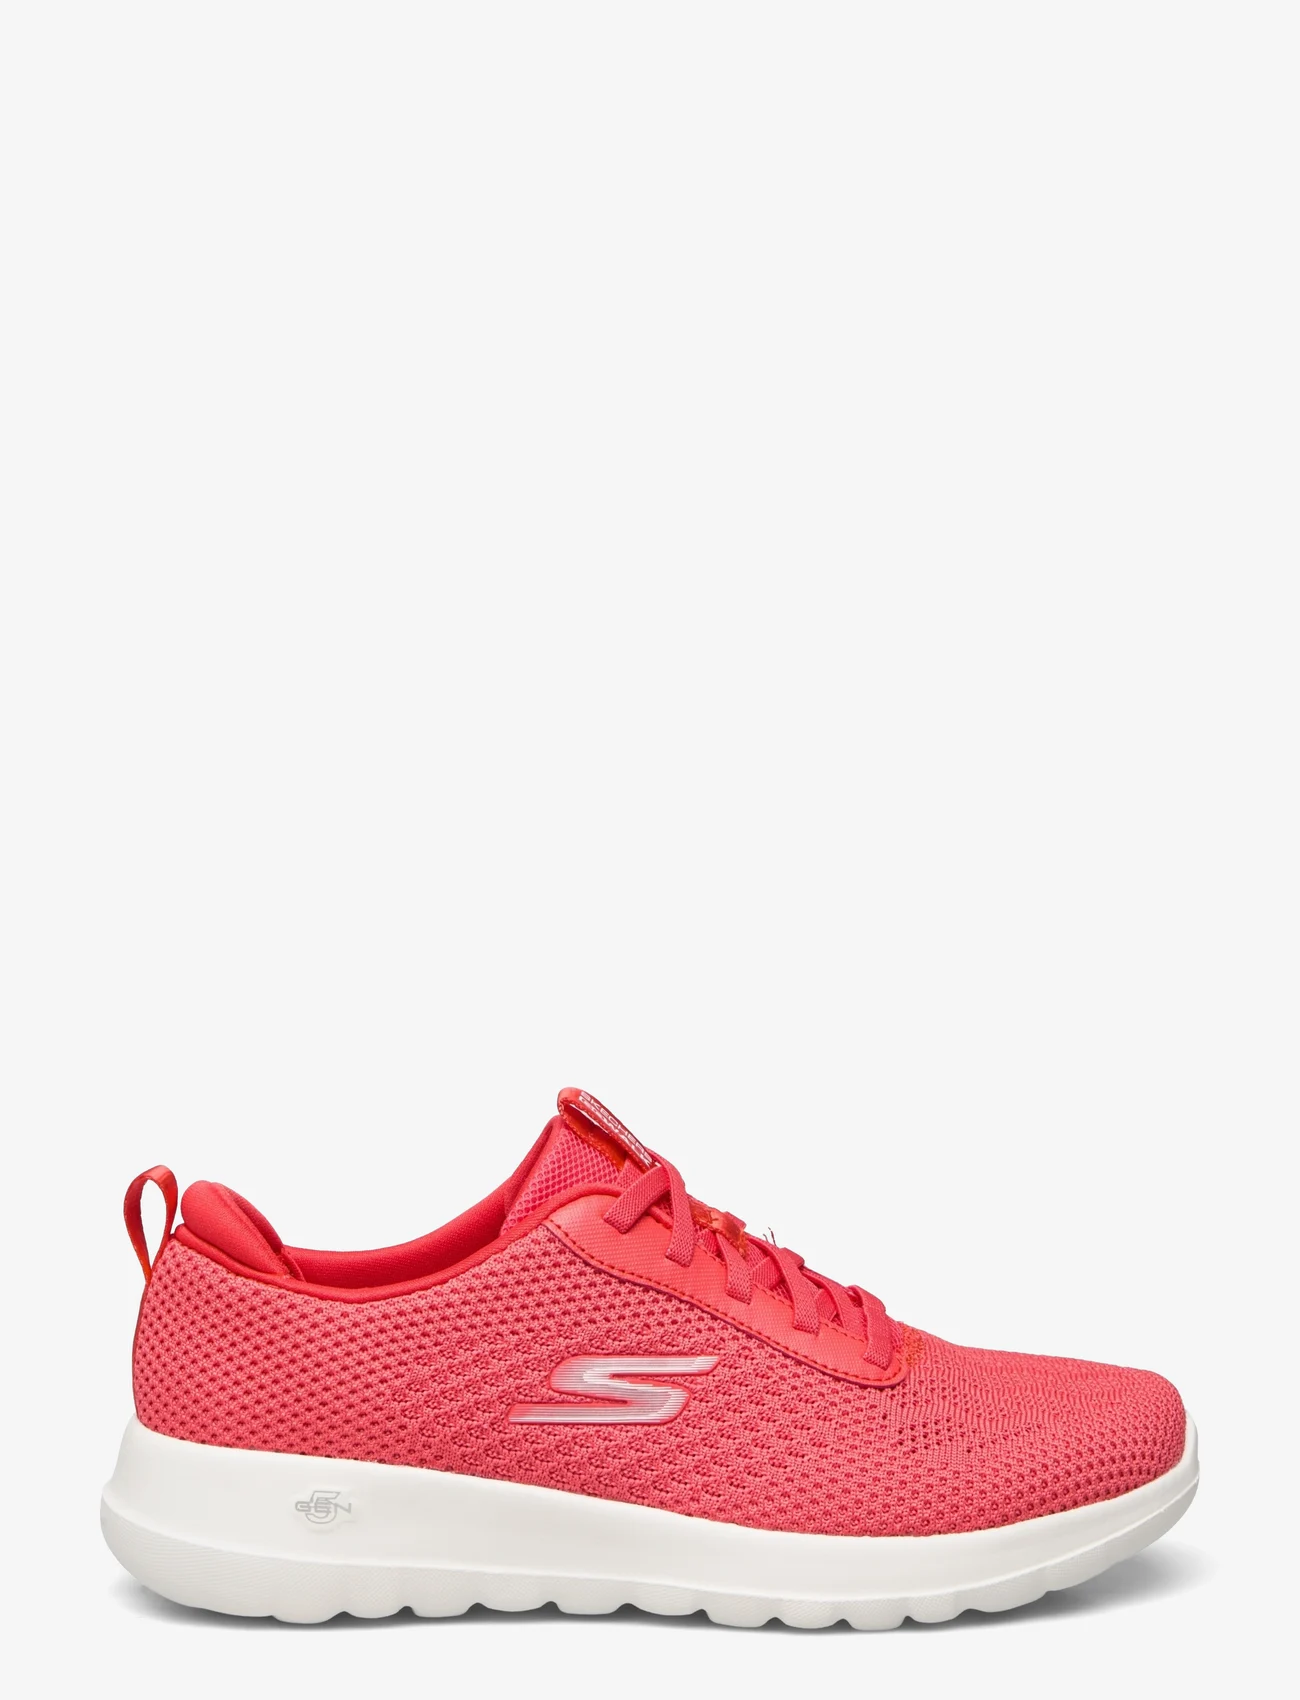 Skechers - Womens Go Walk Joy - Wonderful Spring - lage sneakers - red red - 1